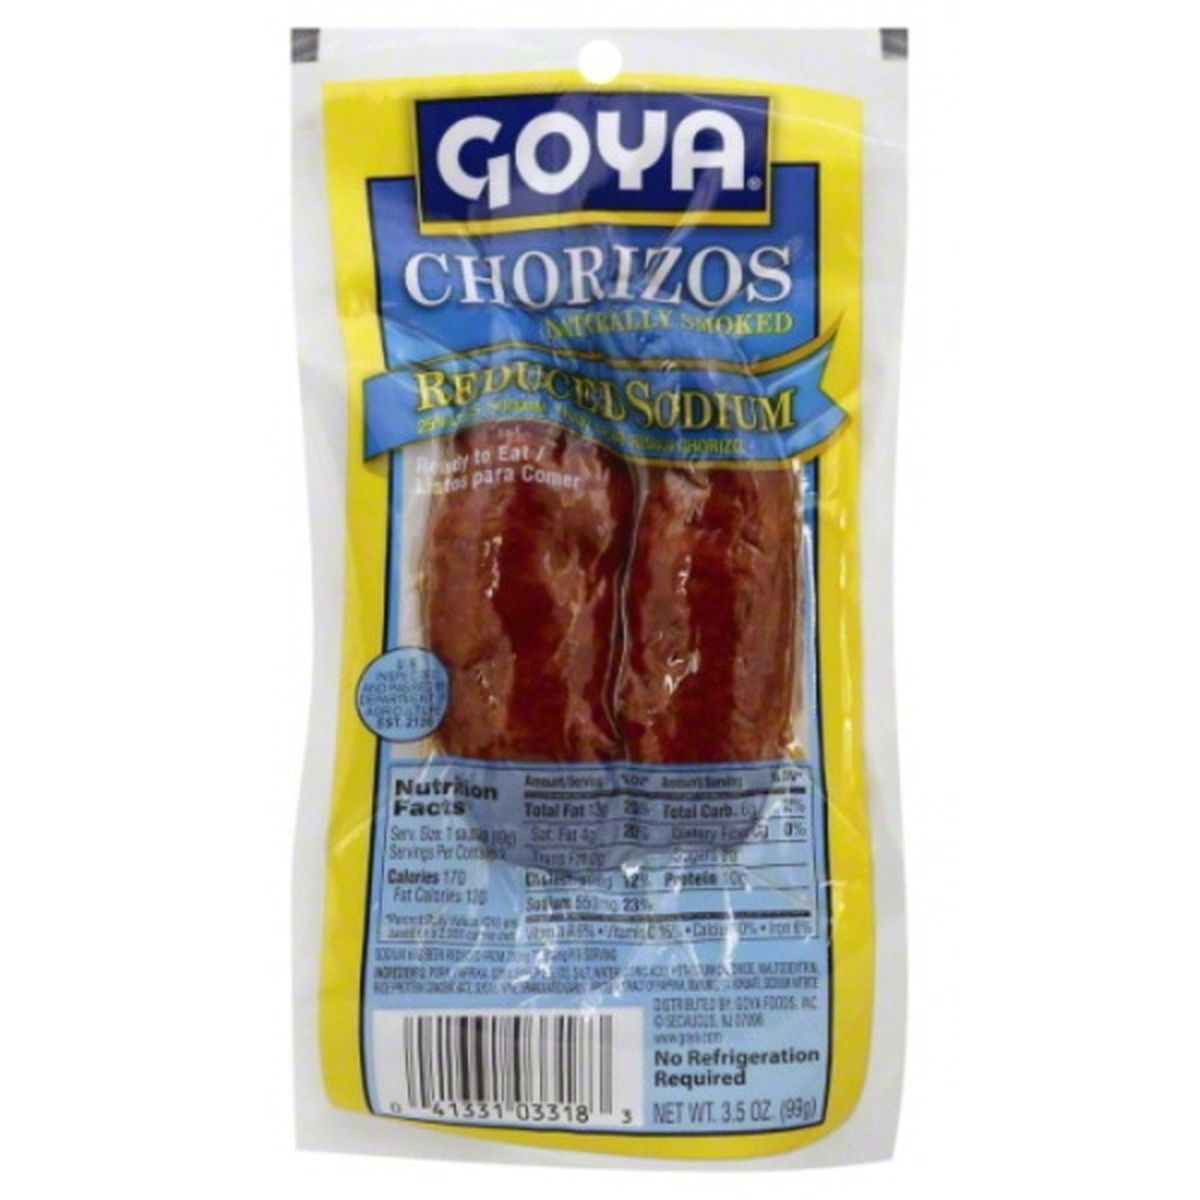 Calories in Goya Chorizos, Reduced Sodium, Naturally Smoked